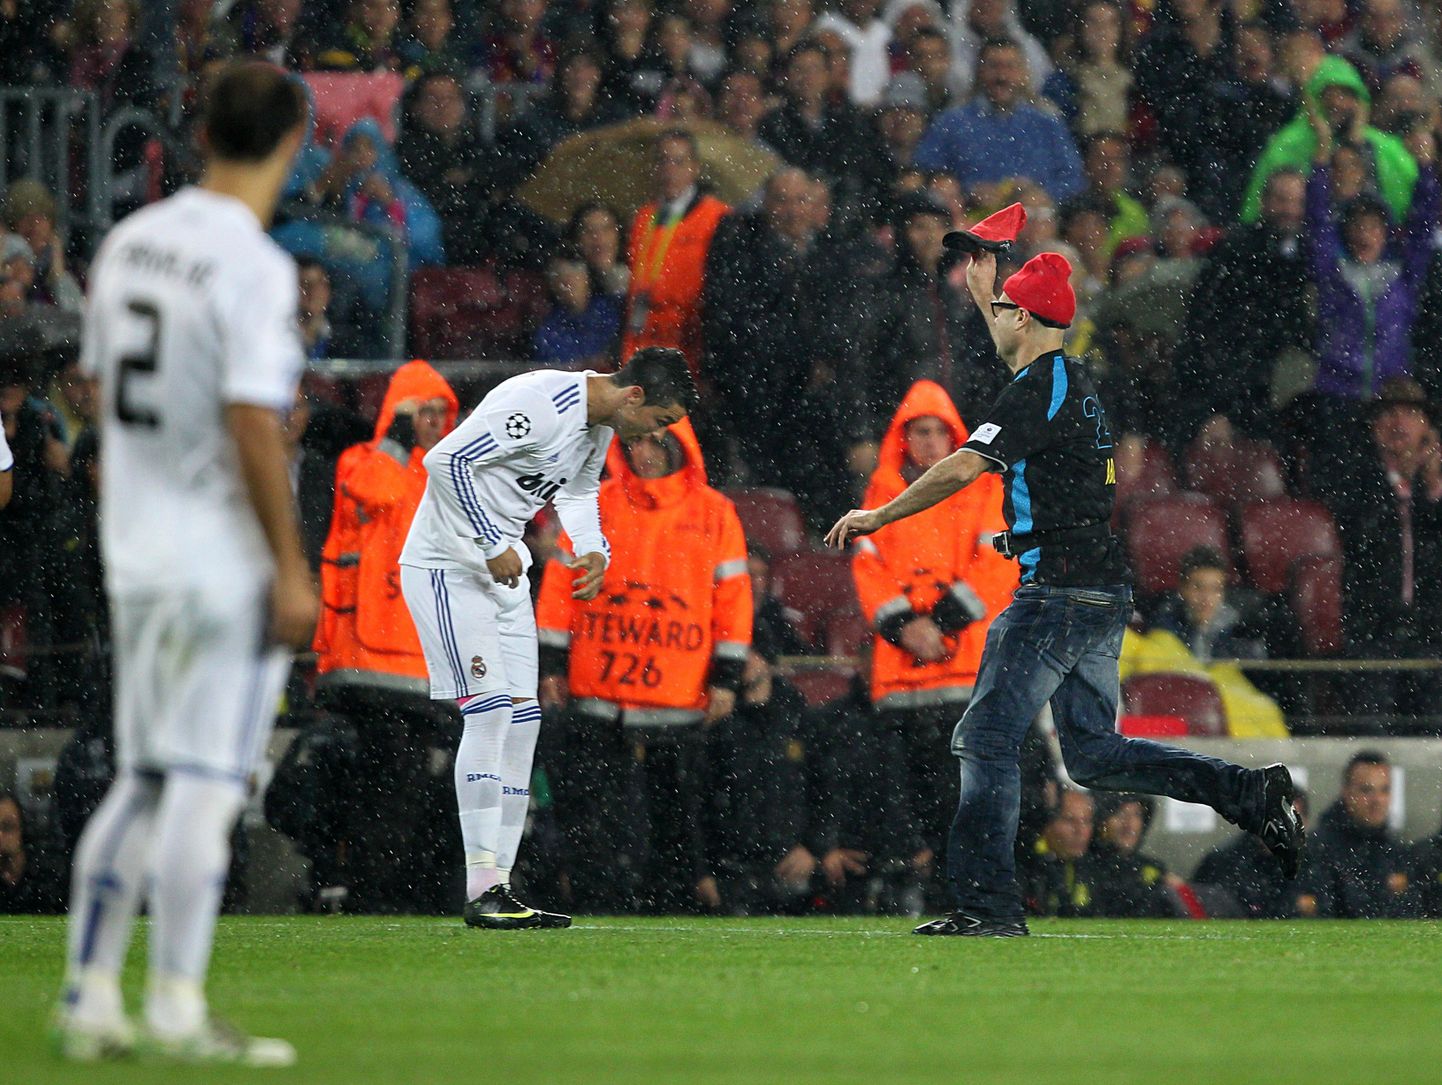 Jimmy Jump jooksis väljakul Cristiano Ronaldo suunas.